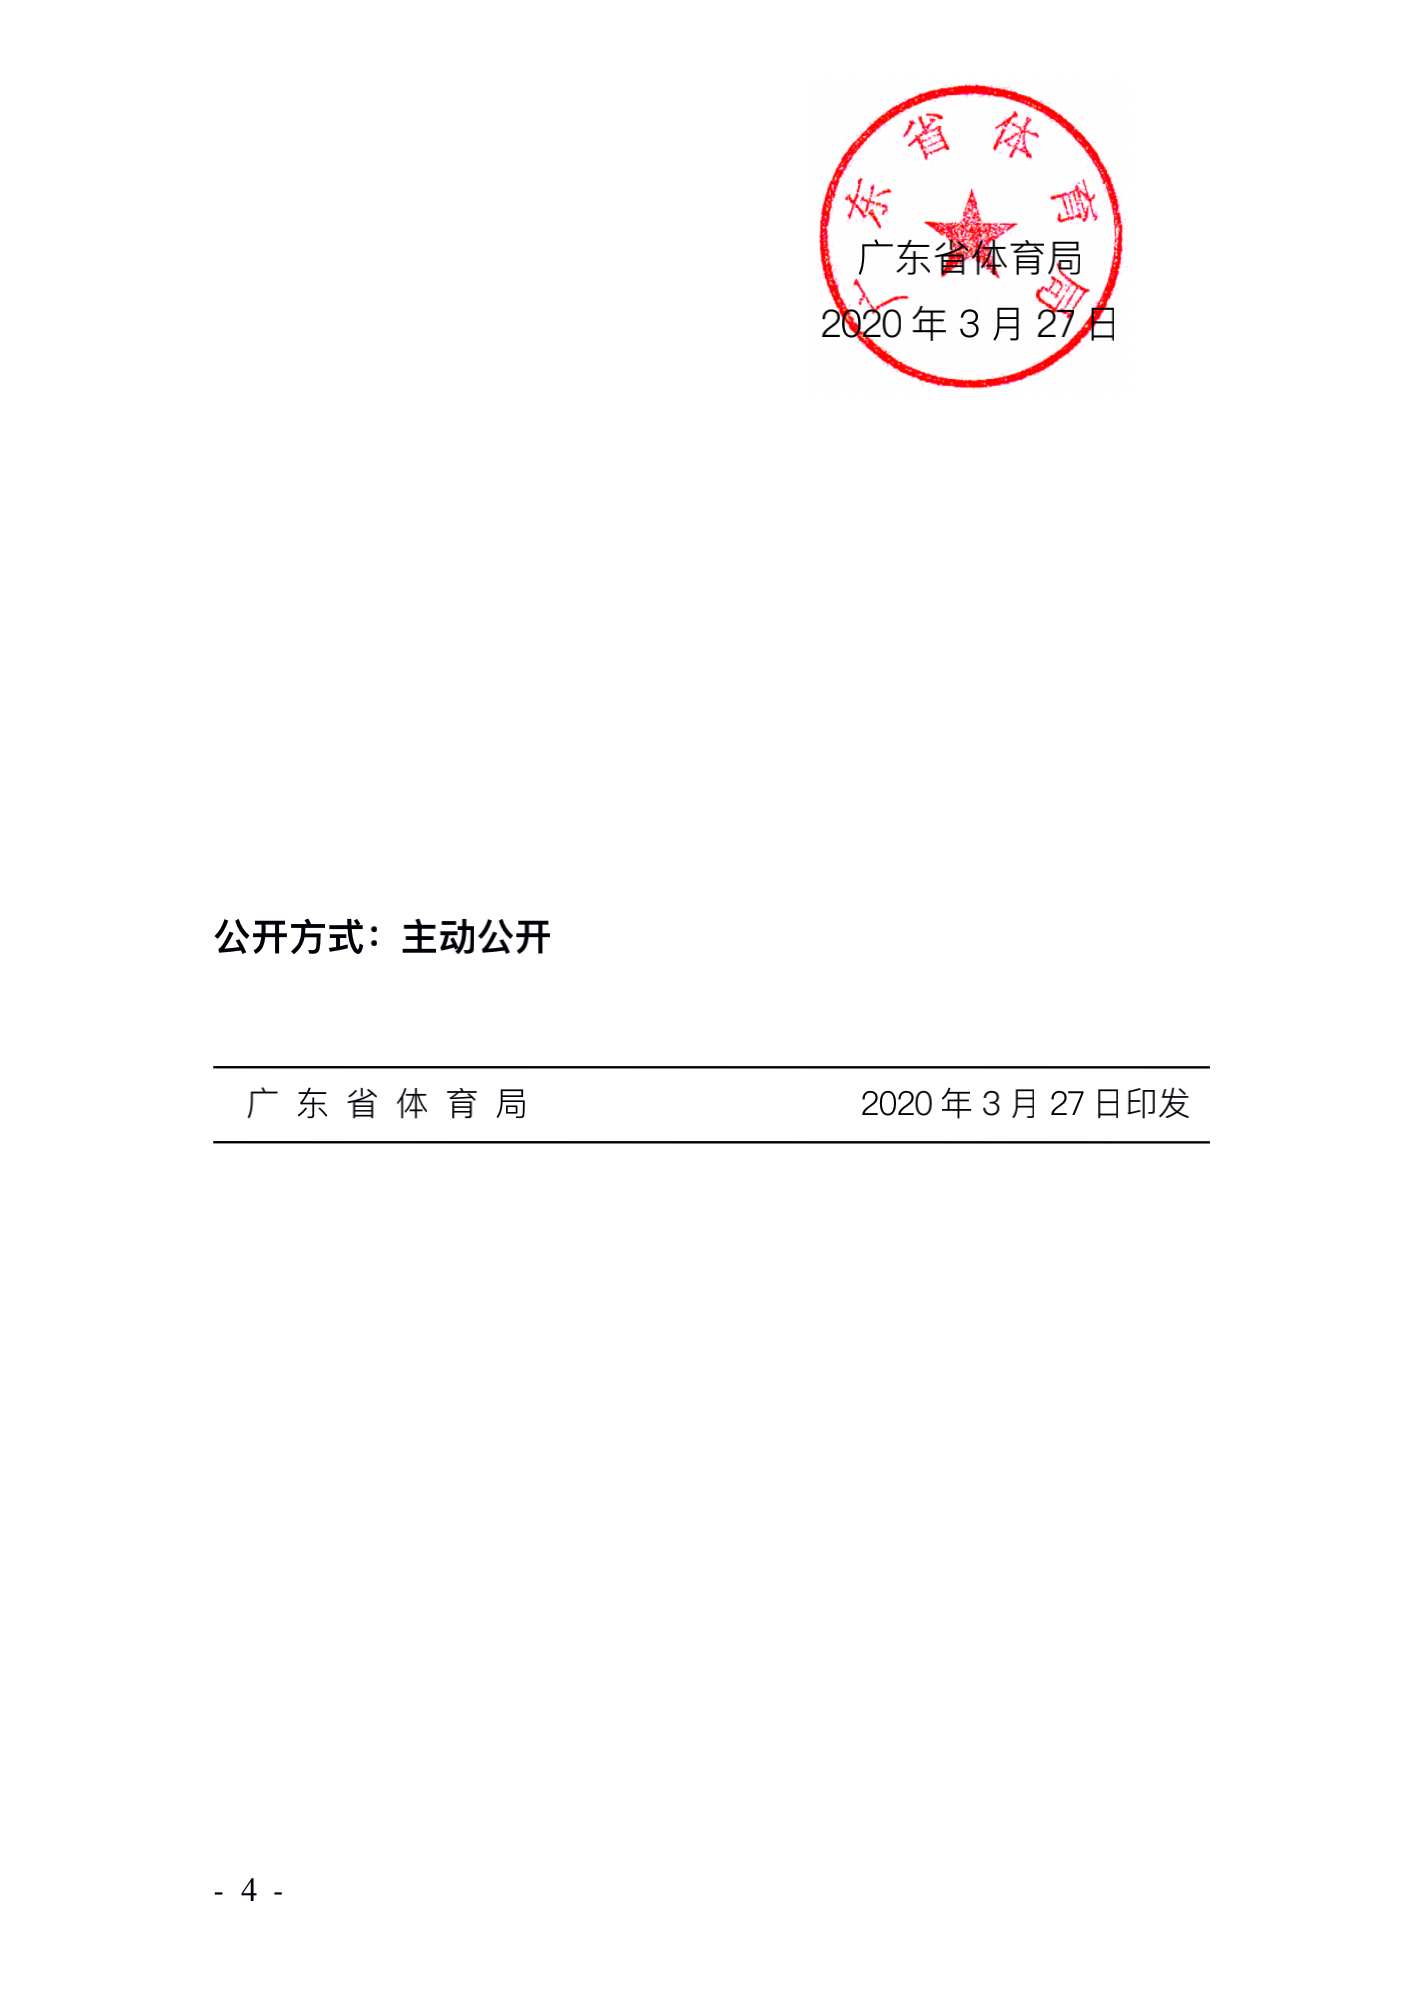 广东省体育局致广大体育企业的公开信_03.png